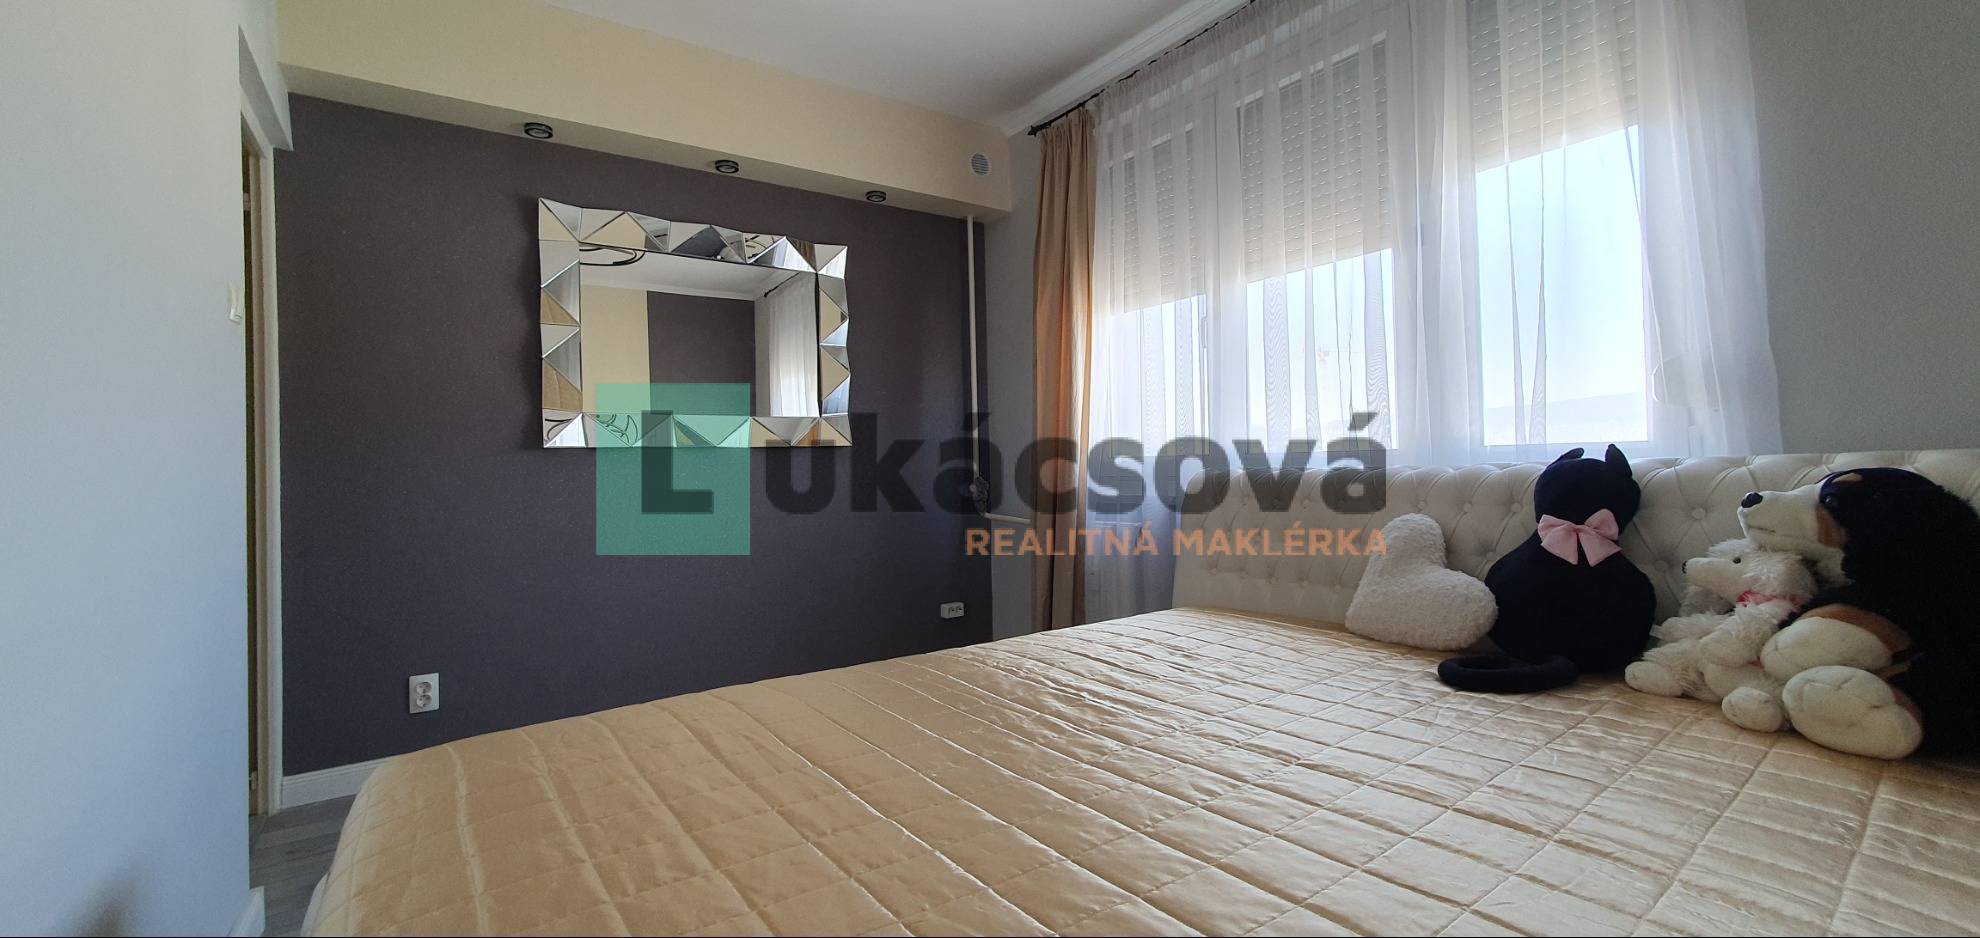 Ponúkam na predaj 2 izbový byt po rekonštrukcii s 4 m2 loggiou v lukratívnej časti Budapesť v XIII. obvode na Vácovej ulici